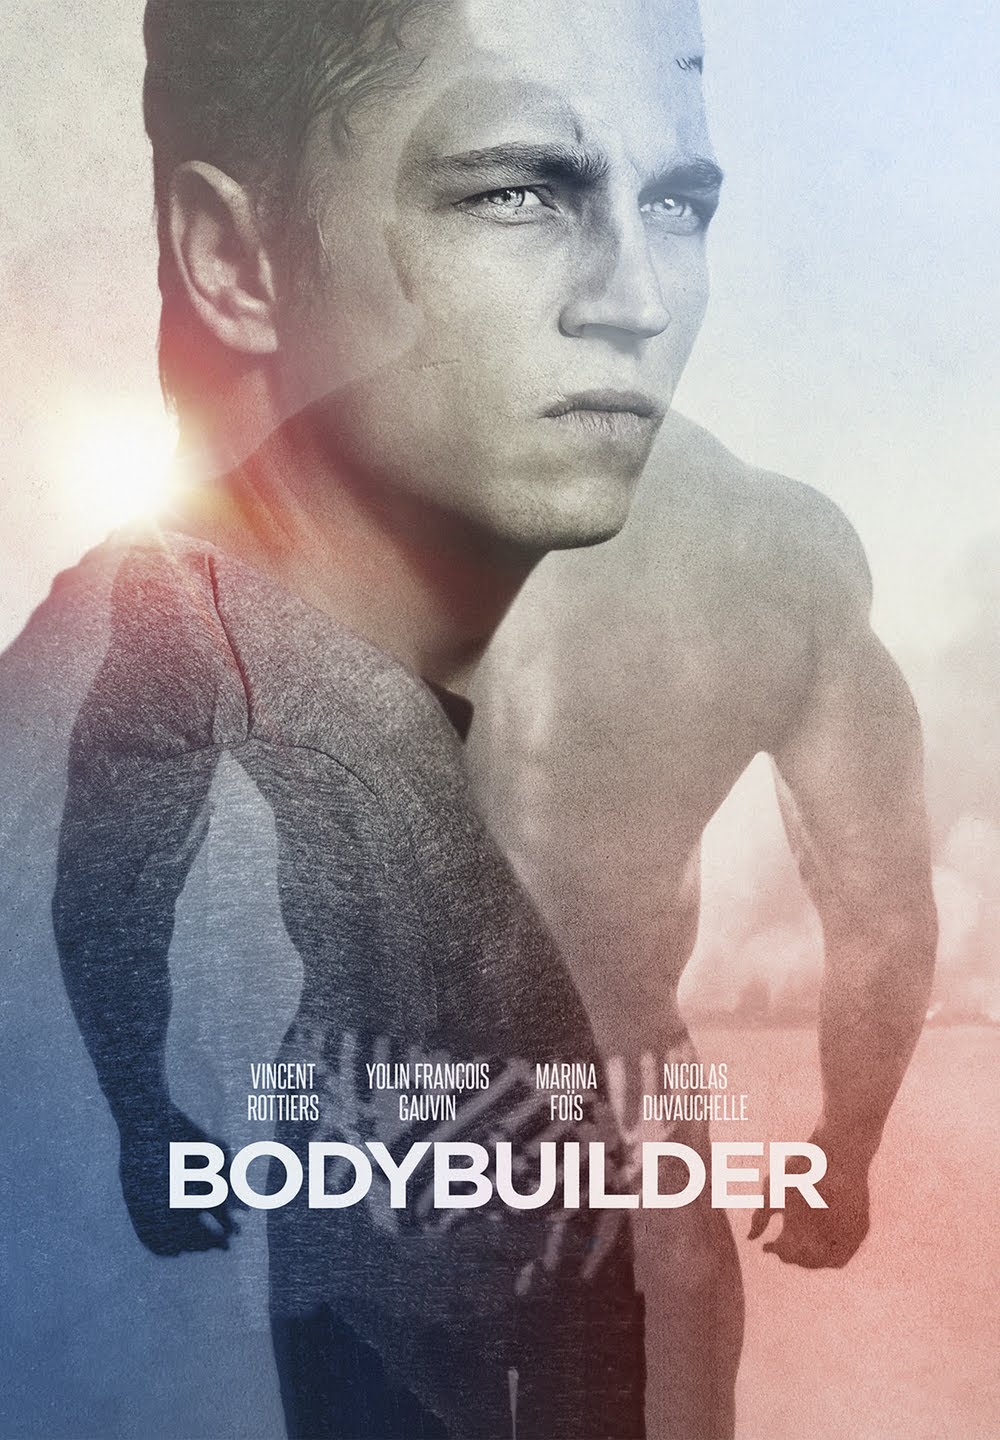 Bodybuilder [HD] (2014)